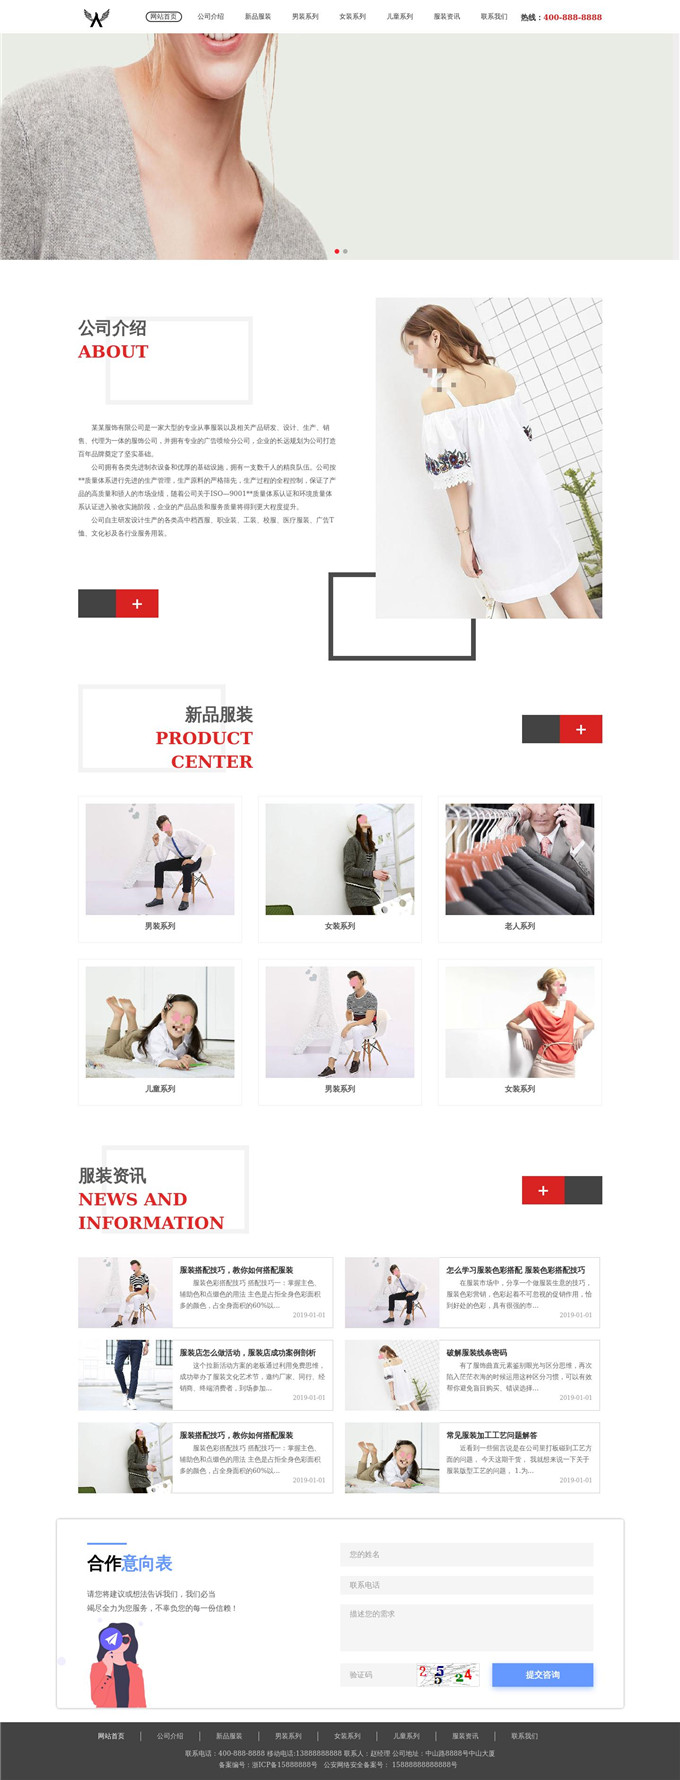 男装女装服装公司网站模板展示图